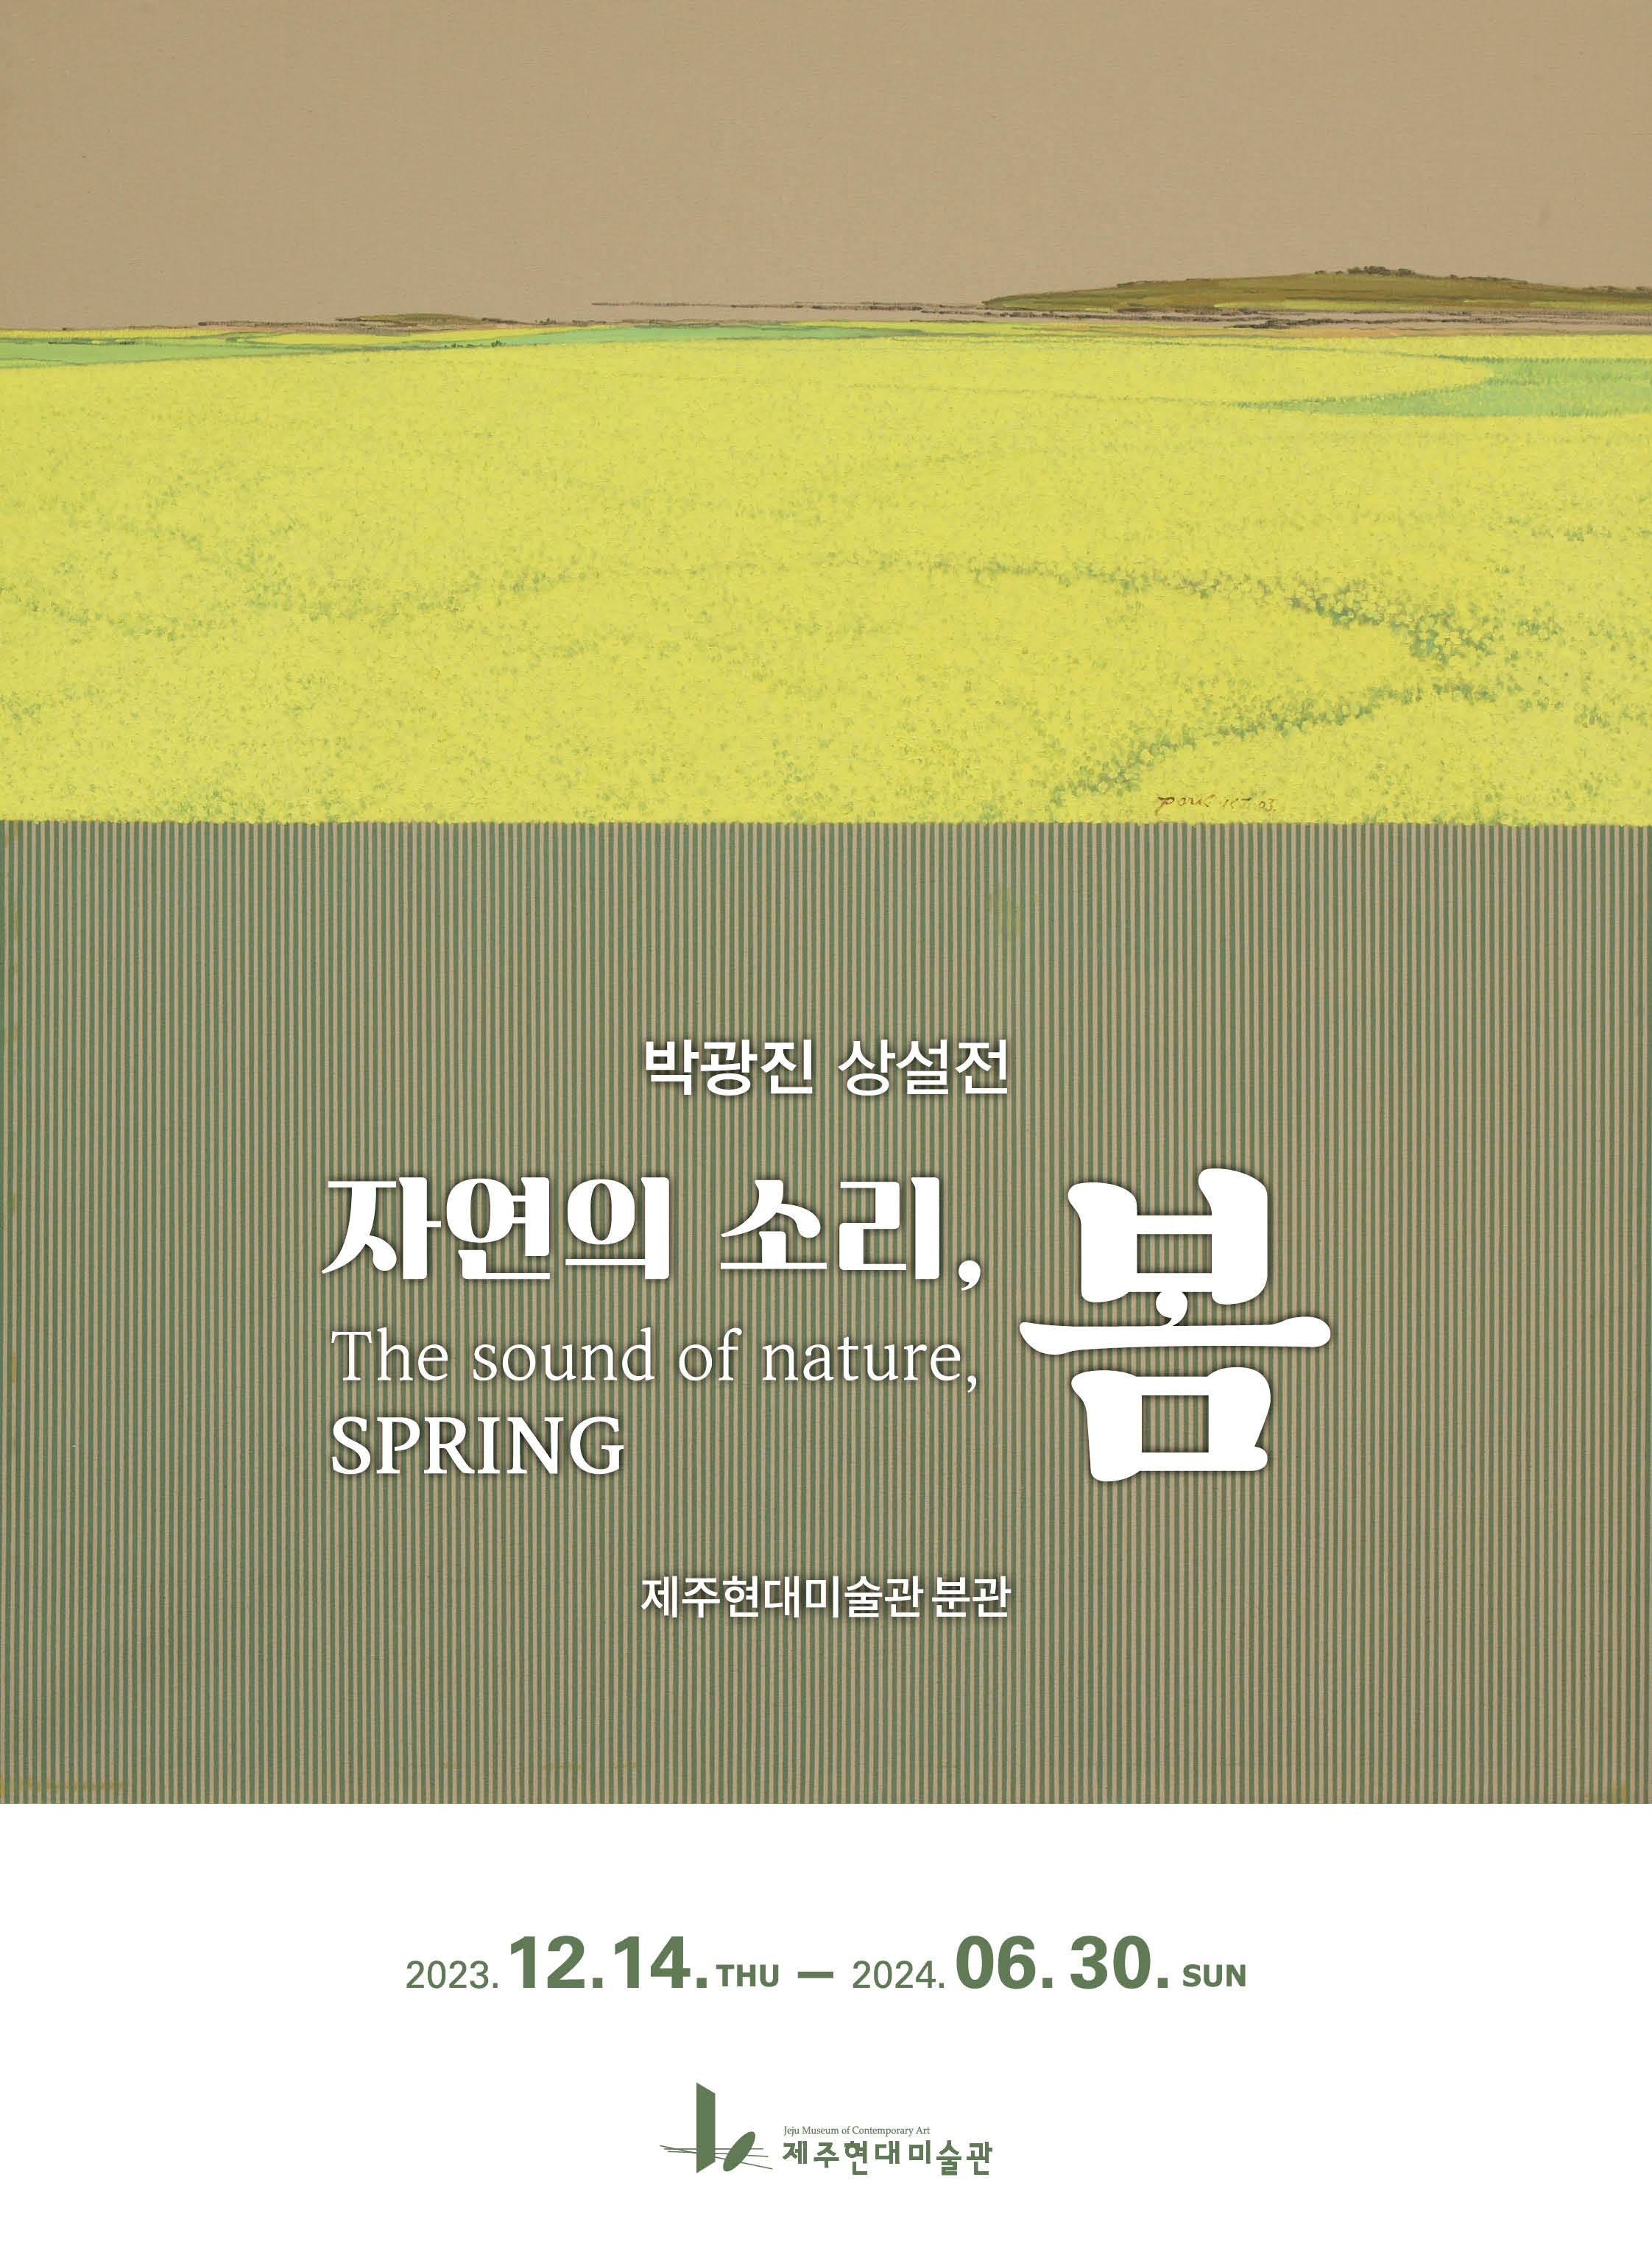 박광진 상설전 《자연의 소리, 봄》